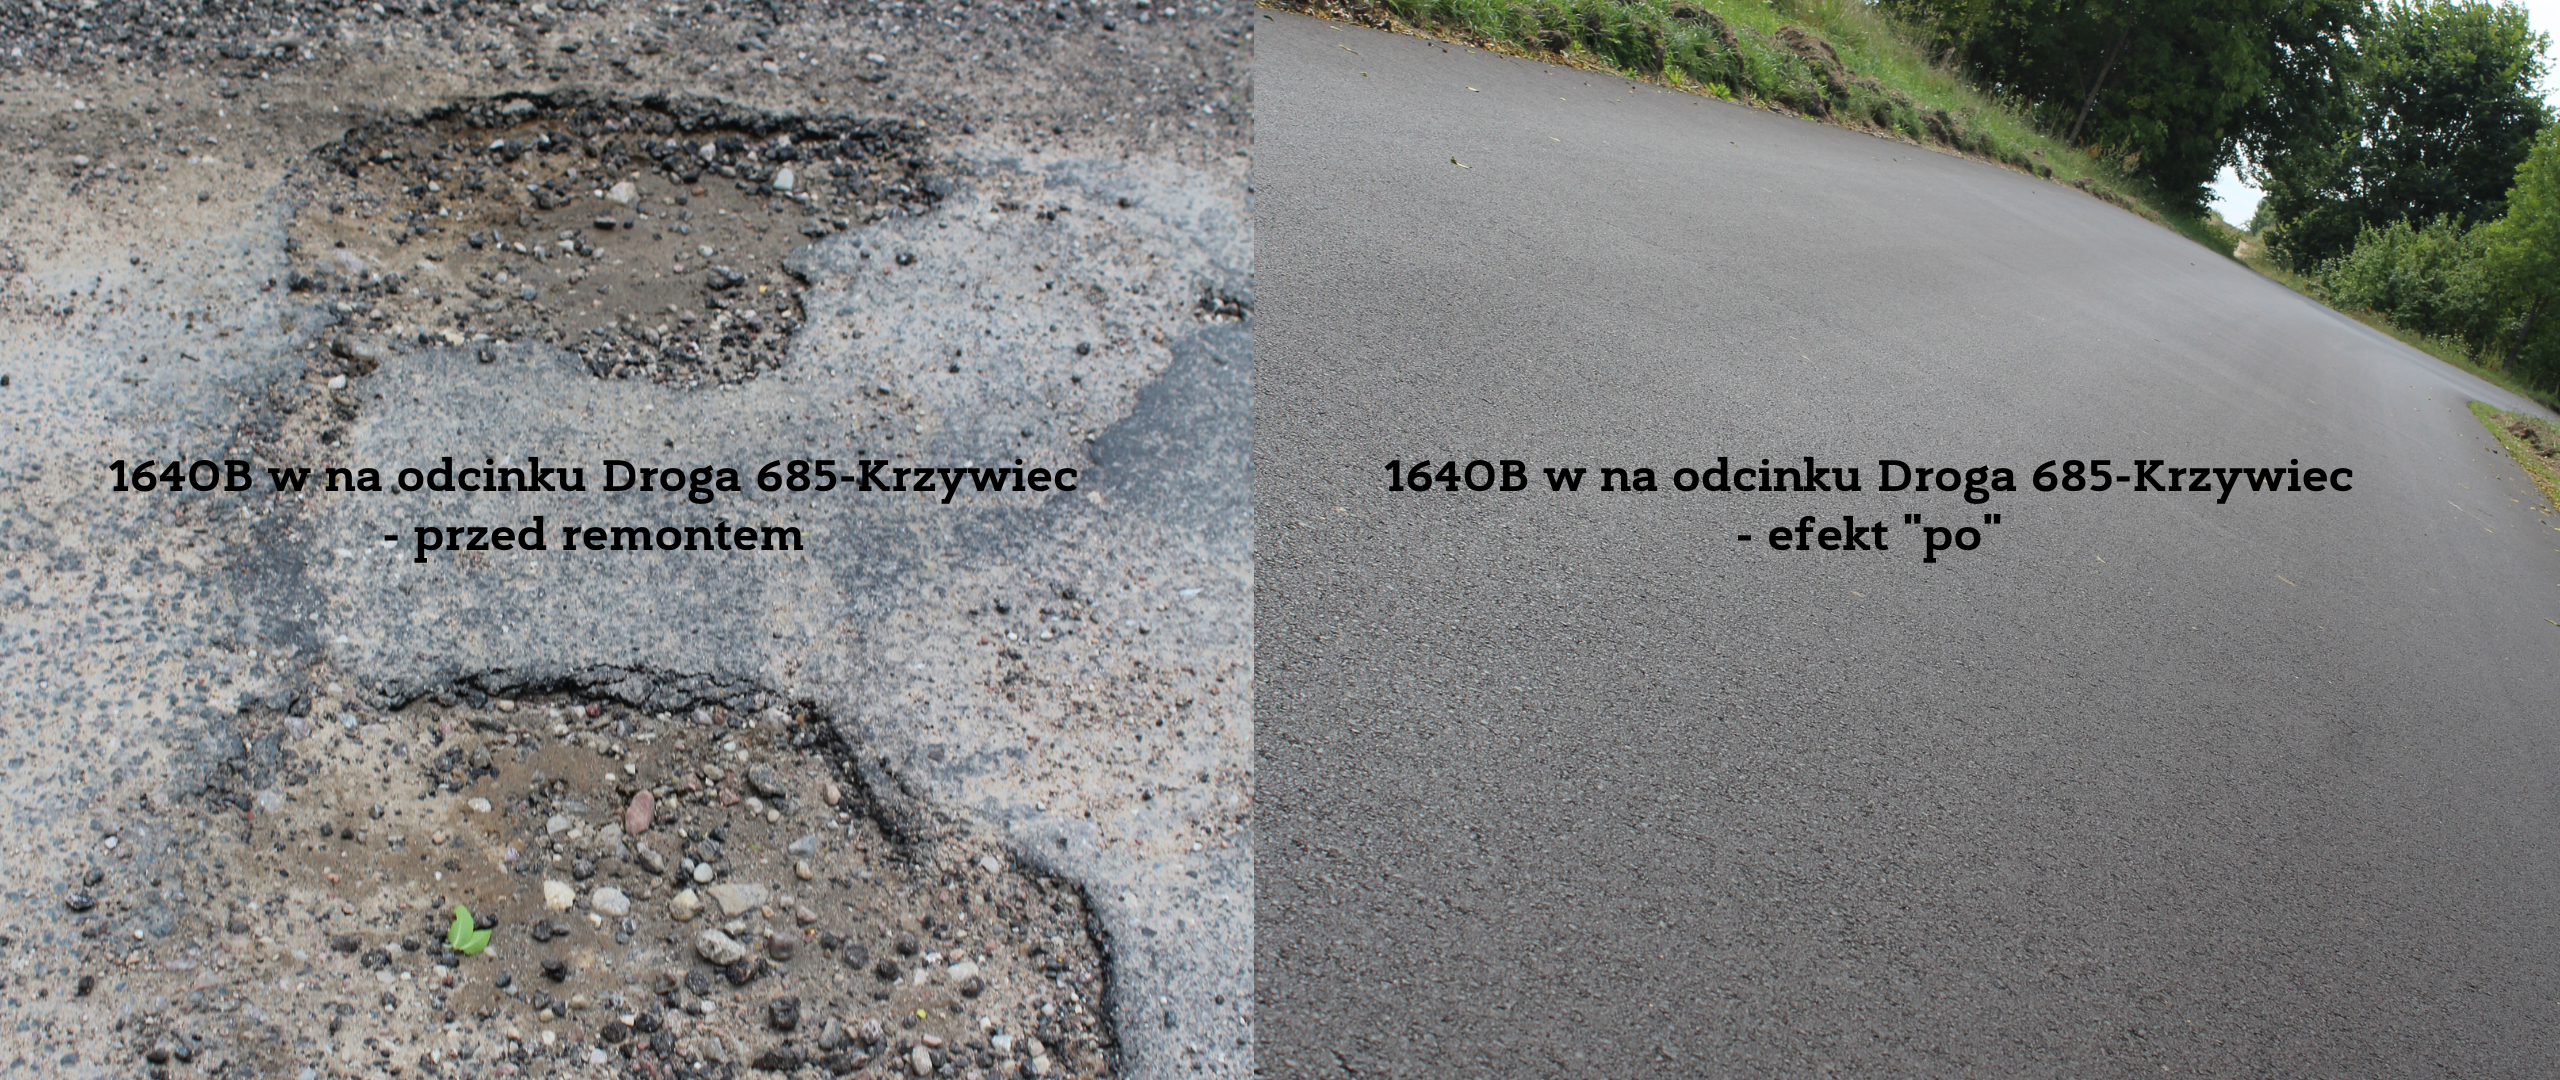 Kolaż zdjęć prezentujący drogi powiatowe: efekt przed i po remoncie